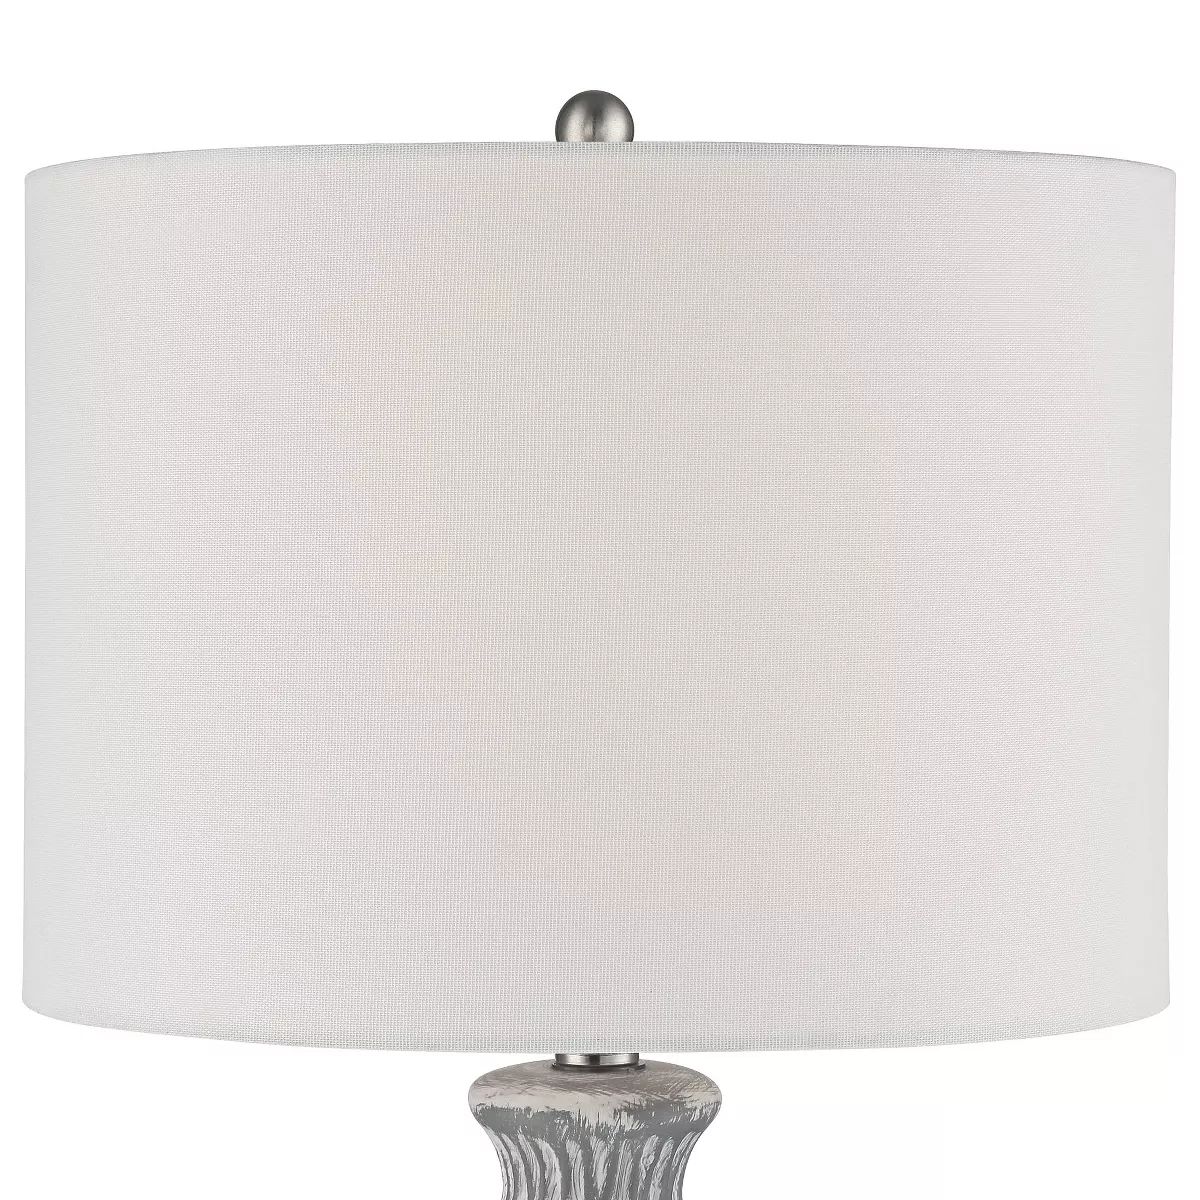 360 Lighting Patrick Modern Coastal Table Lamp 26 1/4" High Gray White Wash Geometric Ceramic Dru... | Target